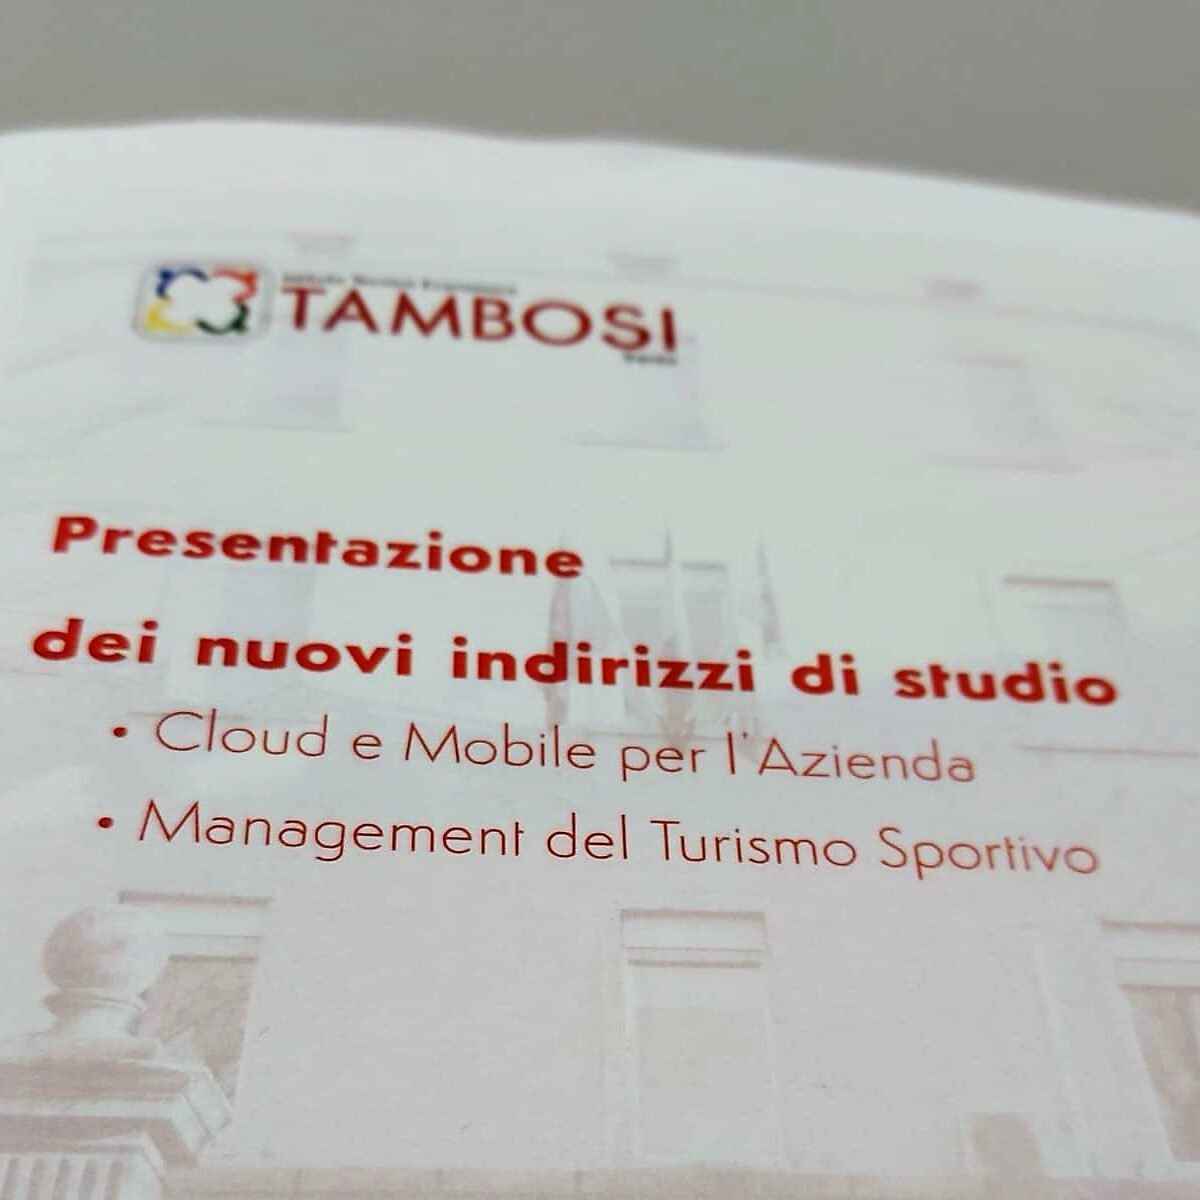 Cartelletta stampa conferenza stampa presentazione percorso programmazione cloud e mobile Tambosi Trento 2021